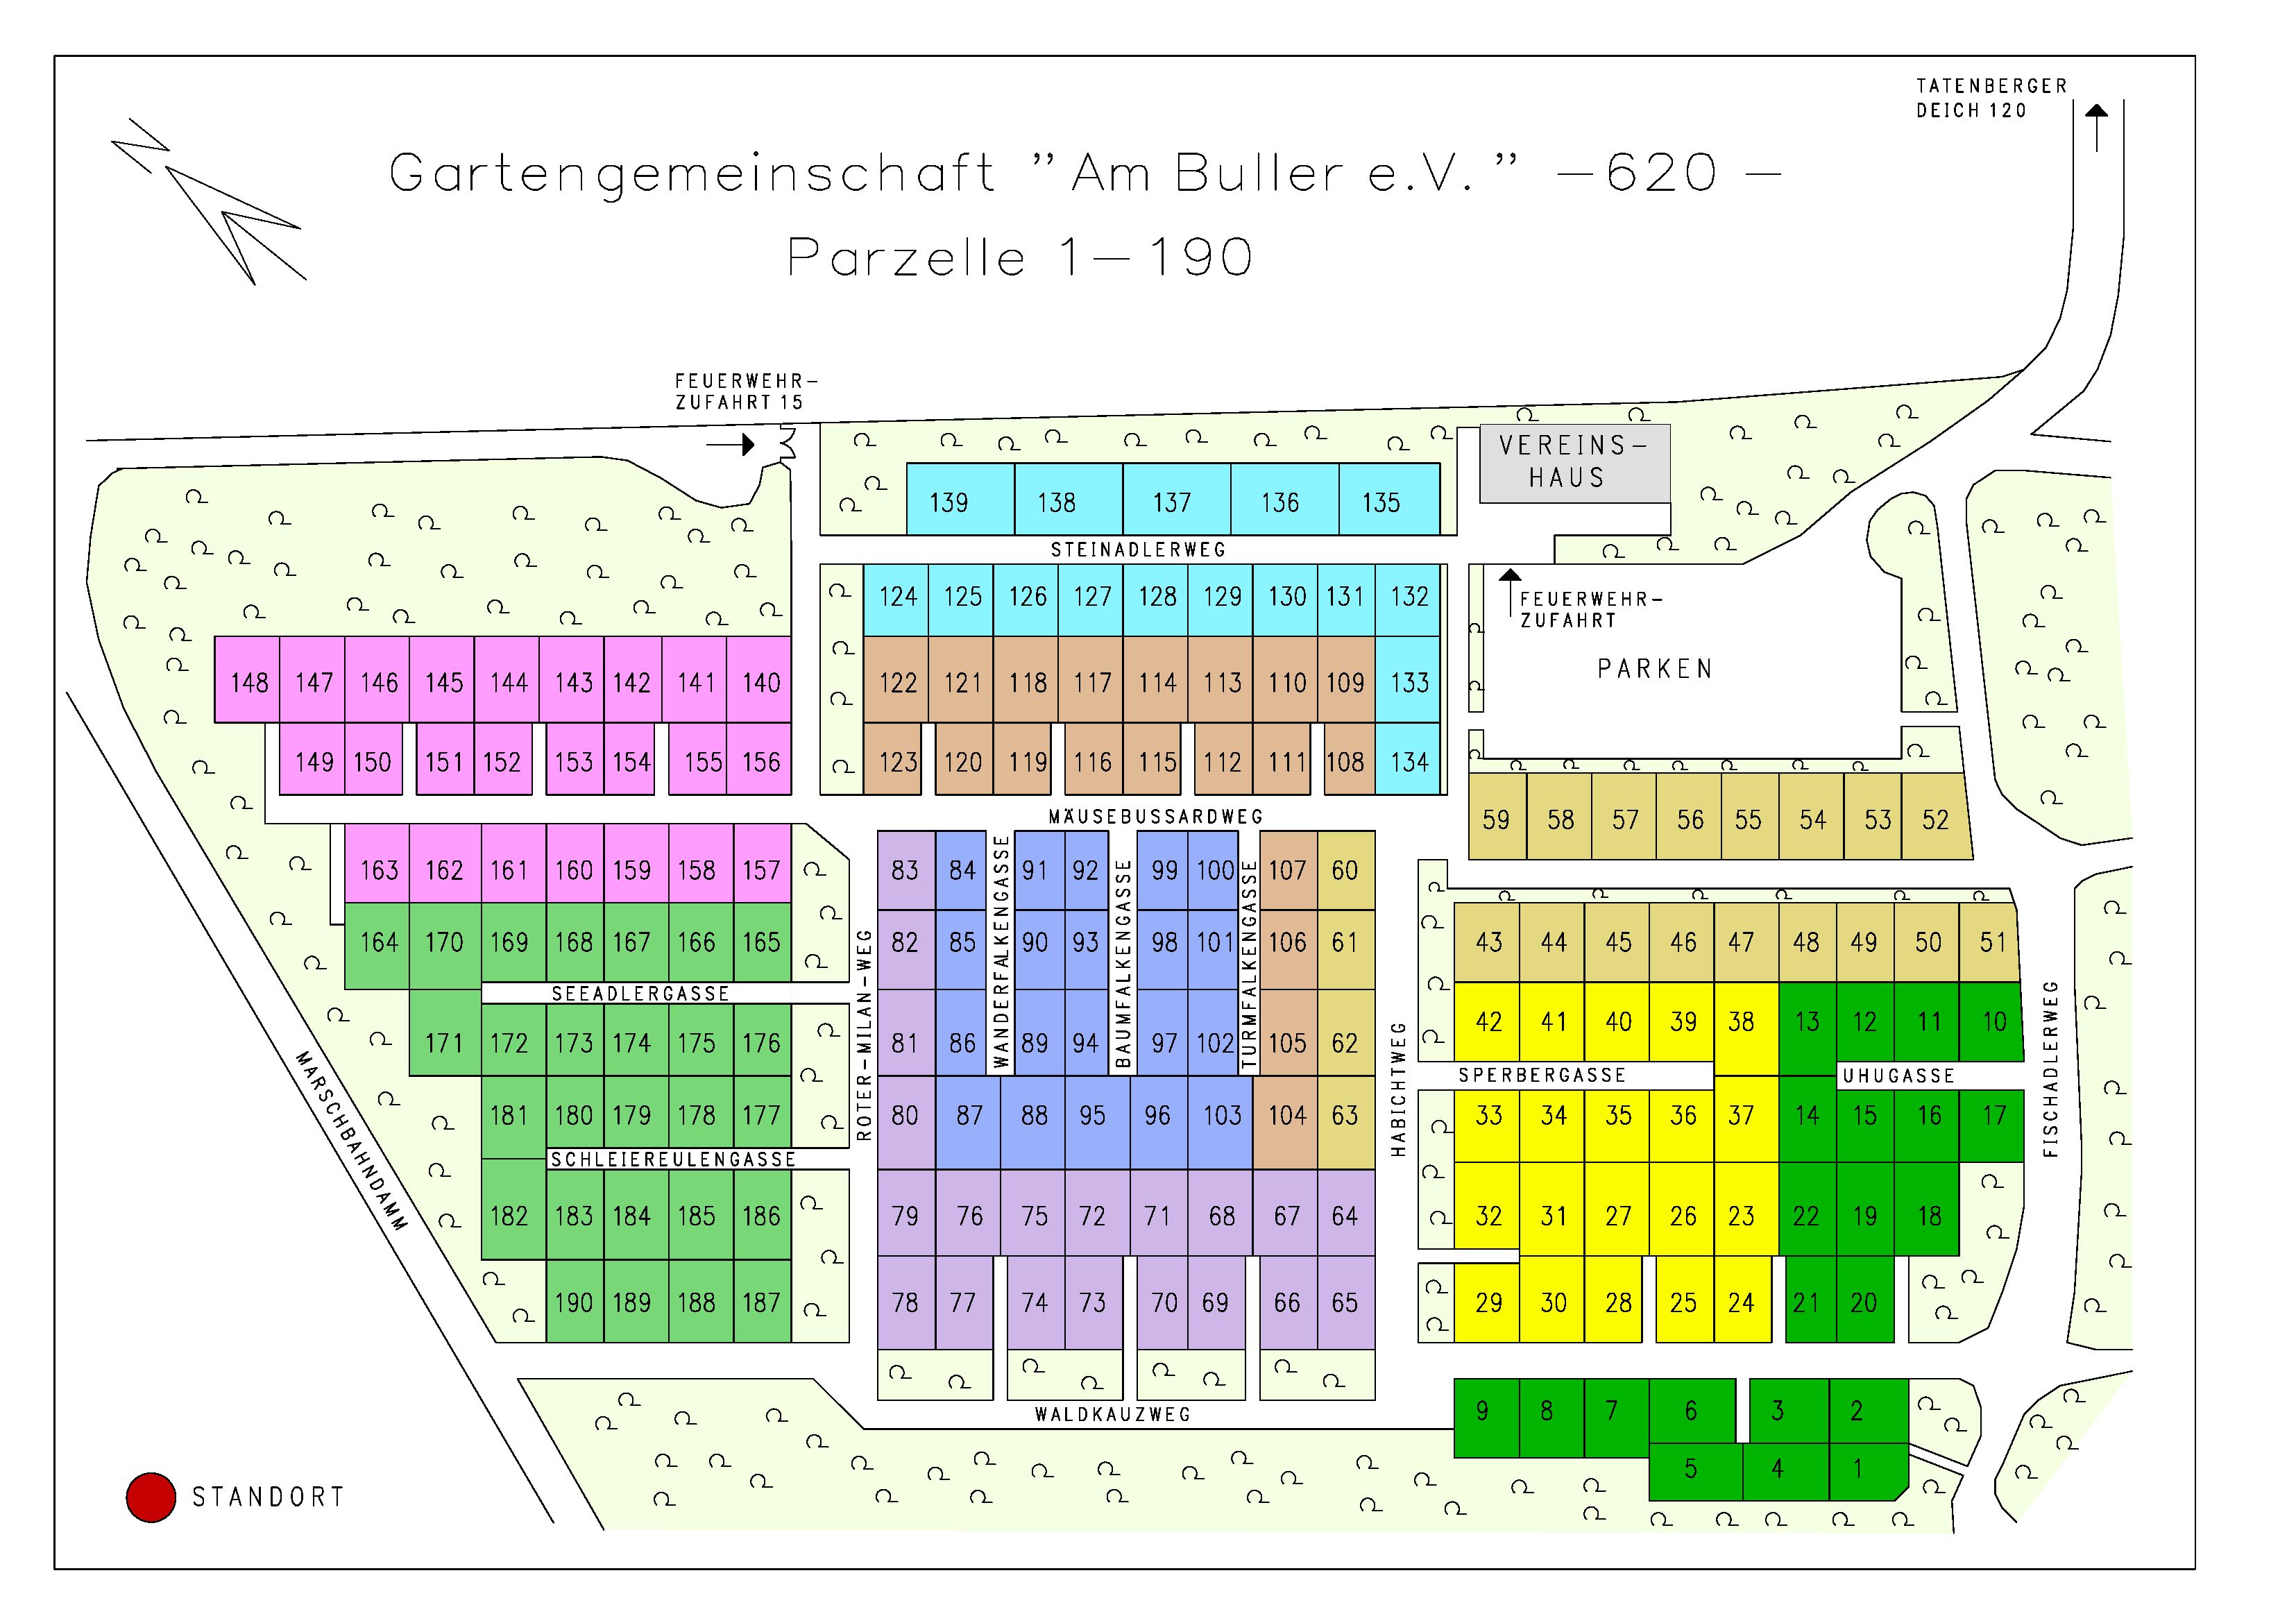 Vereinshaus Gartengemeinschaft am Buller e.V. -620-